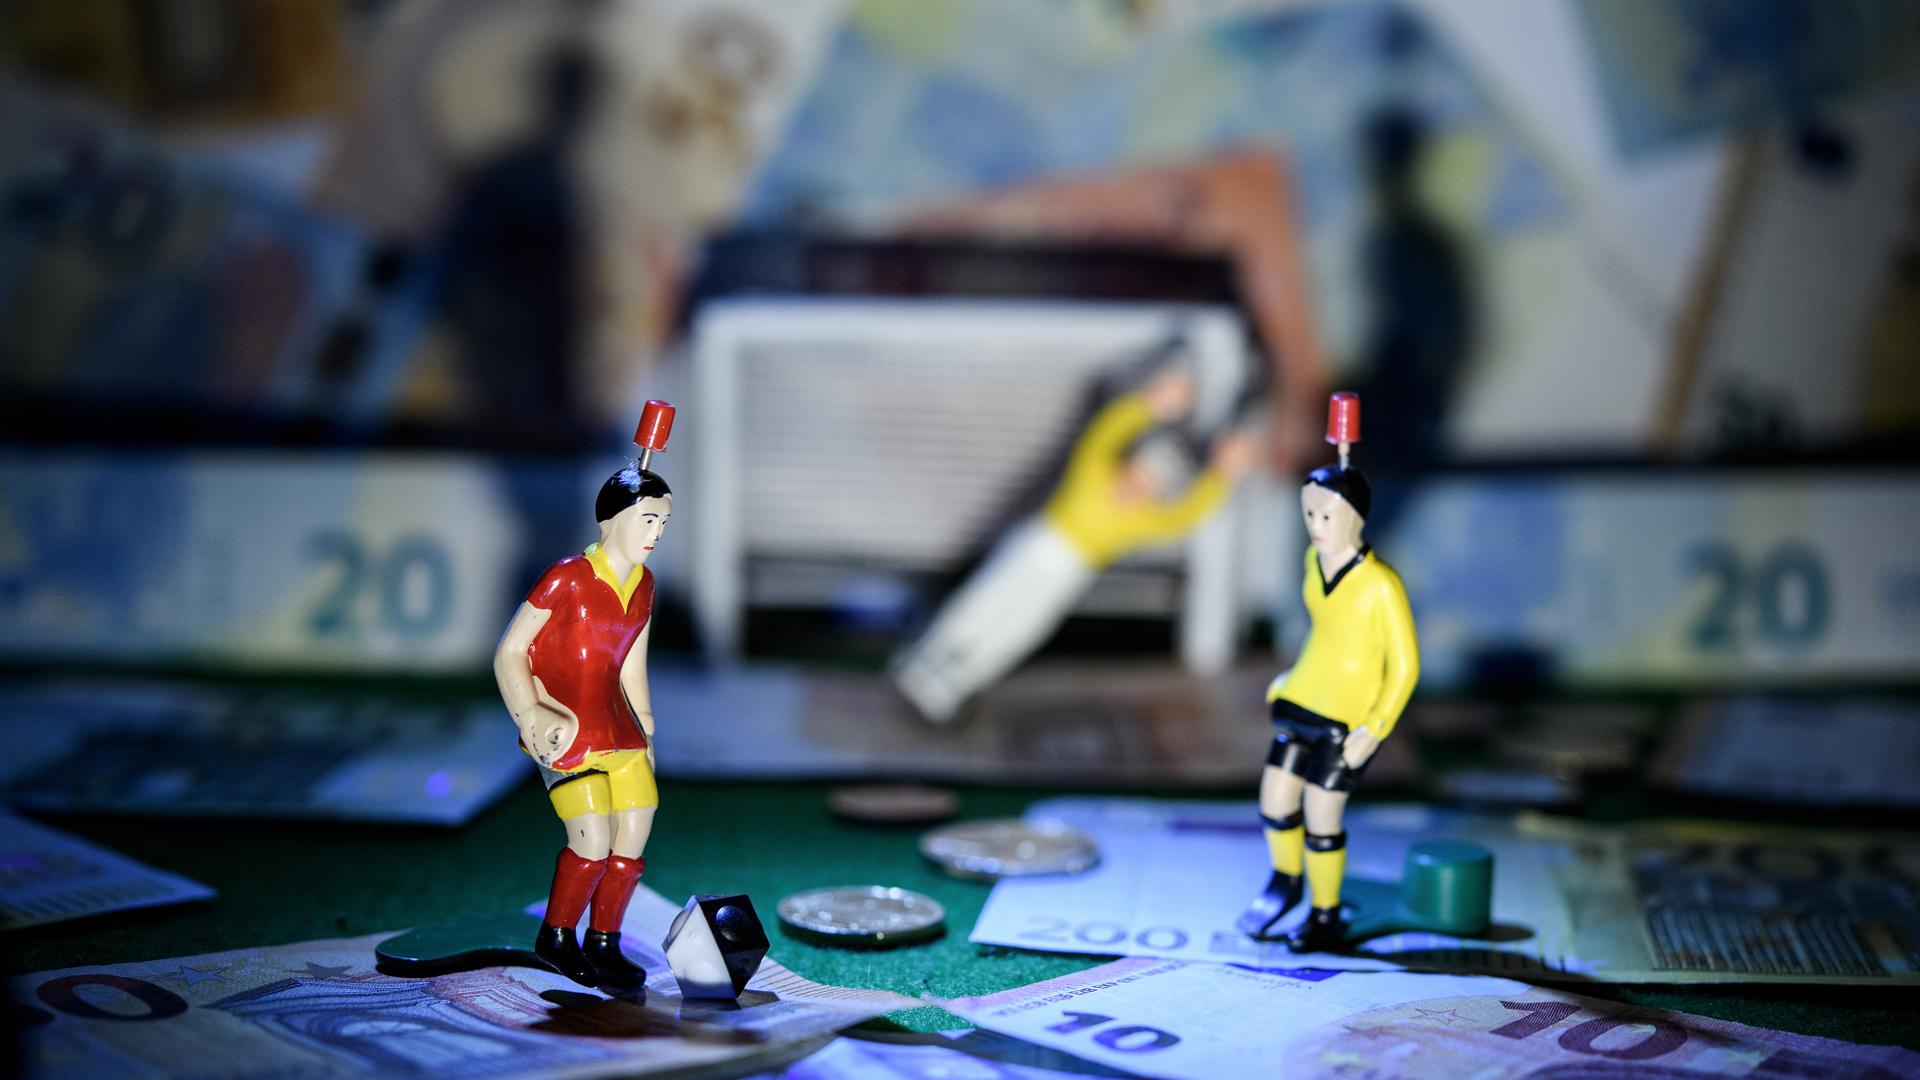 Männchen stehen auf einem Tipp-Kick-Spielfeld, auf und neben dem zahlreiche Geldscheine zu sehen sind.